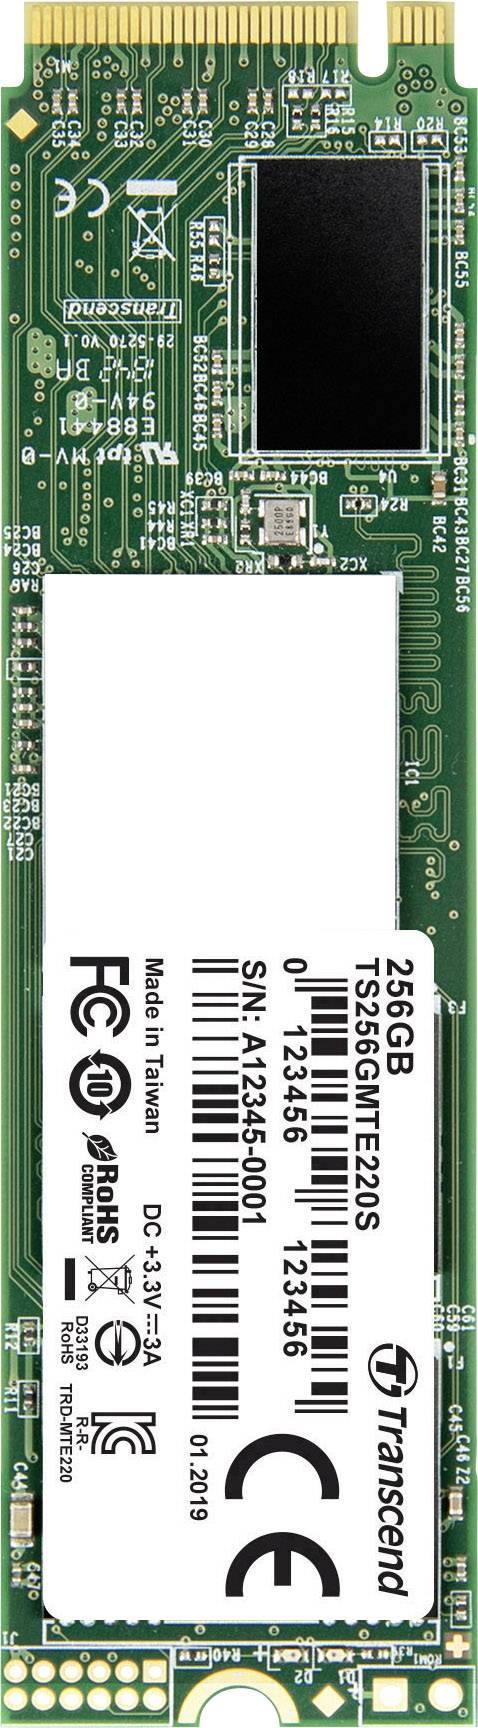 hvad som helst kant græsplæne Transcend 220S 256 GB NVMe/PCIe M.2 internal SSD M.2 NVMe PCIe 3.0 x4  Retail TS256GMTE220S | Conrad.com